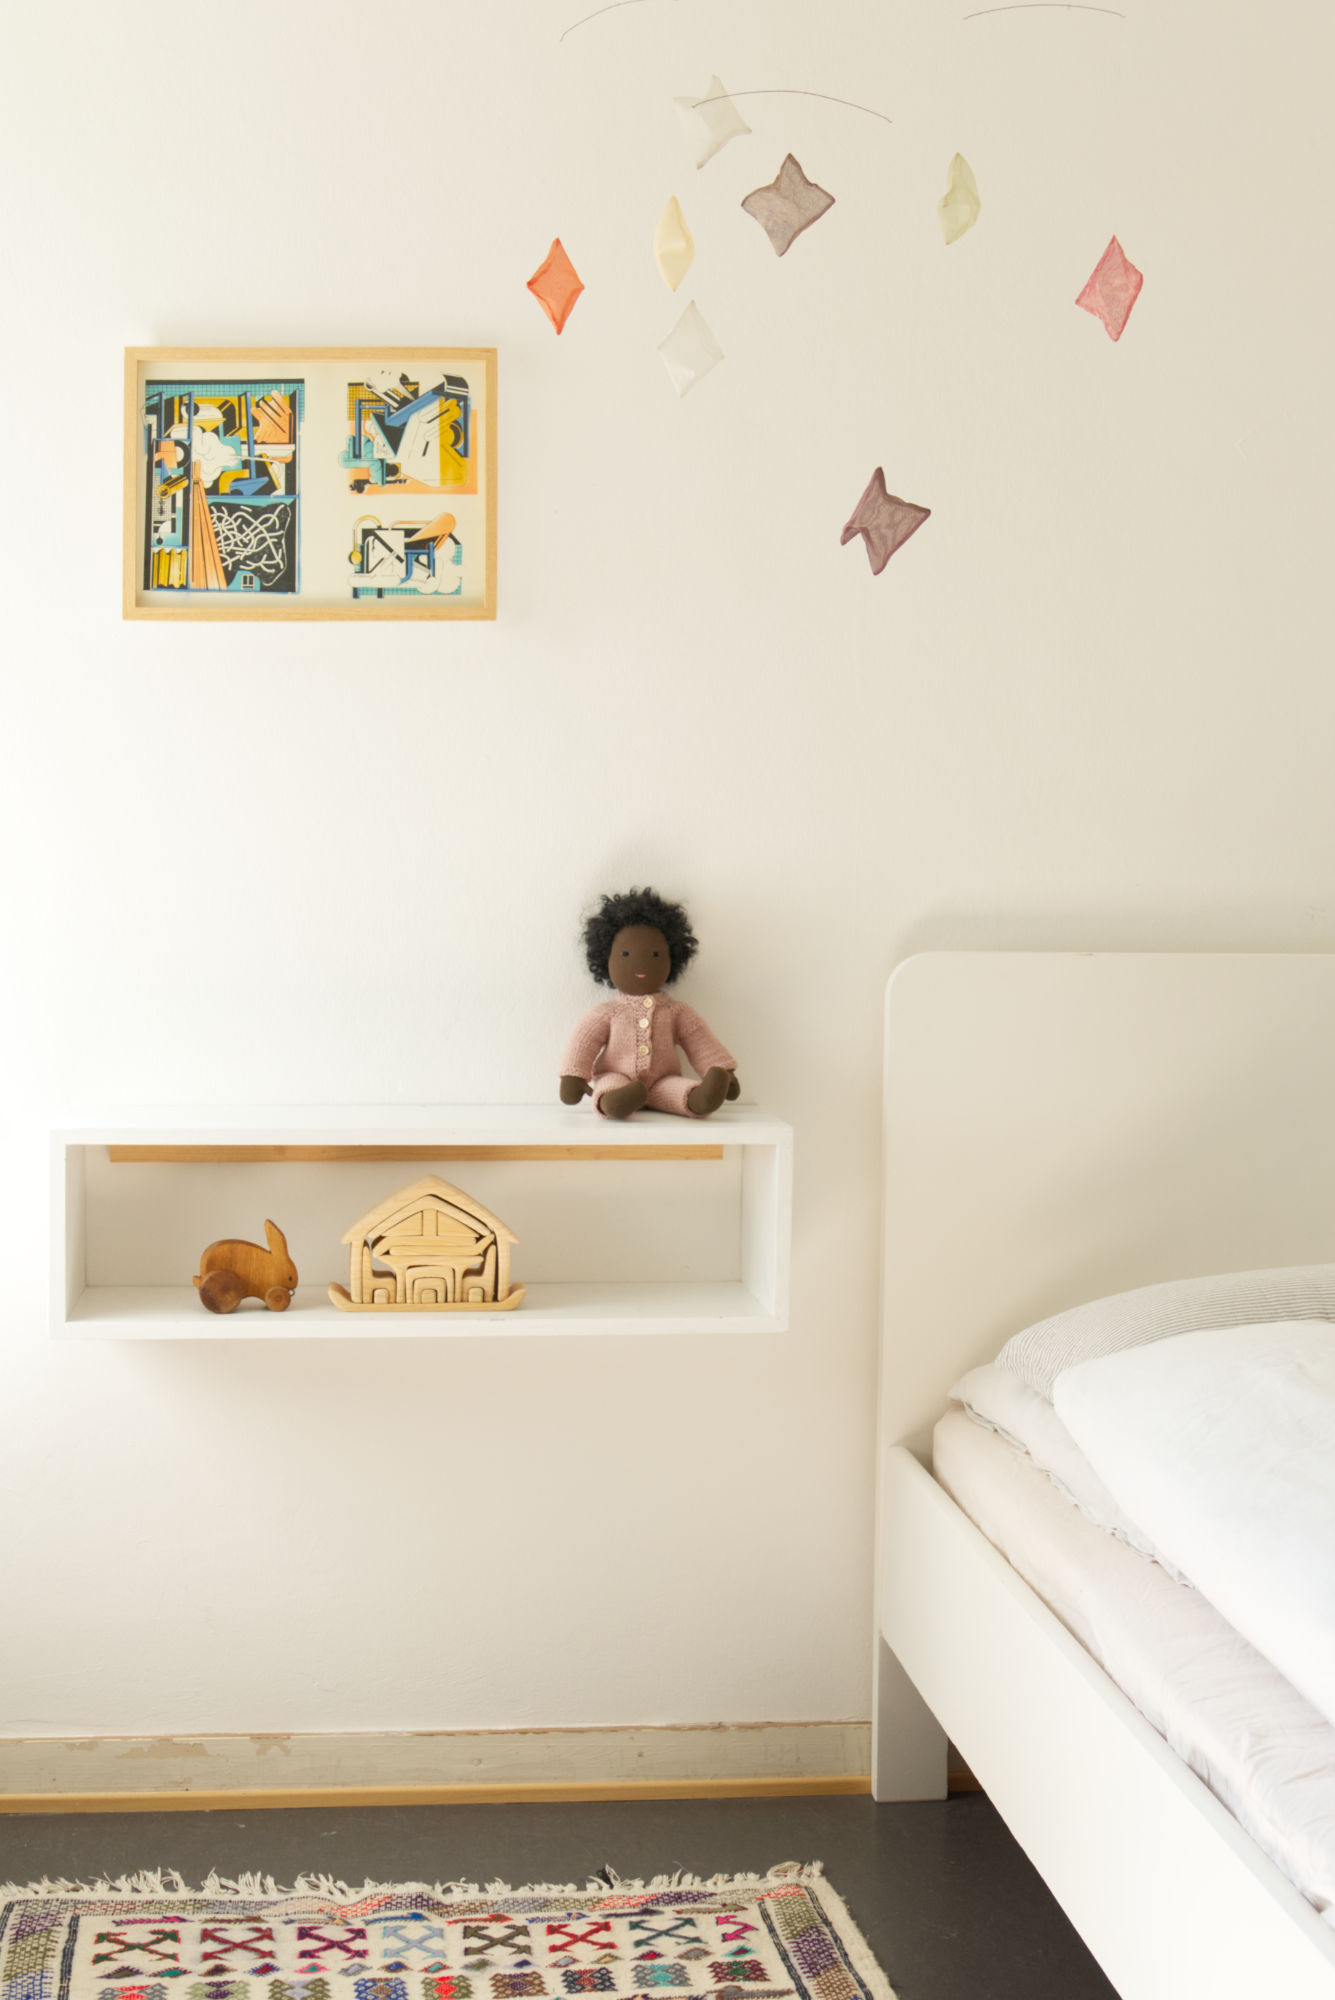 Kategorienbild Einblick in ein Kinderzimmer. Zu sehen sind verschiedene Spielsachen, wie eine sitzende Puppe, ein Holzhase und ein Holz-Bauset.